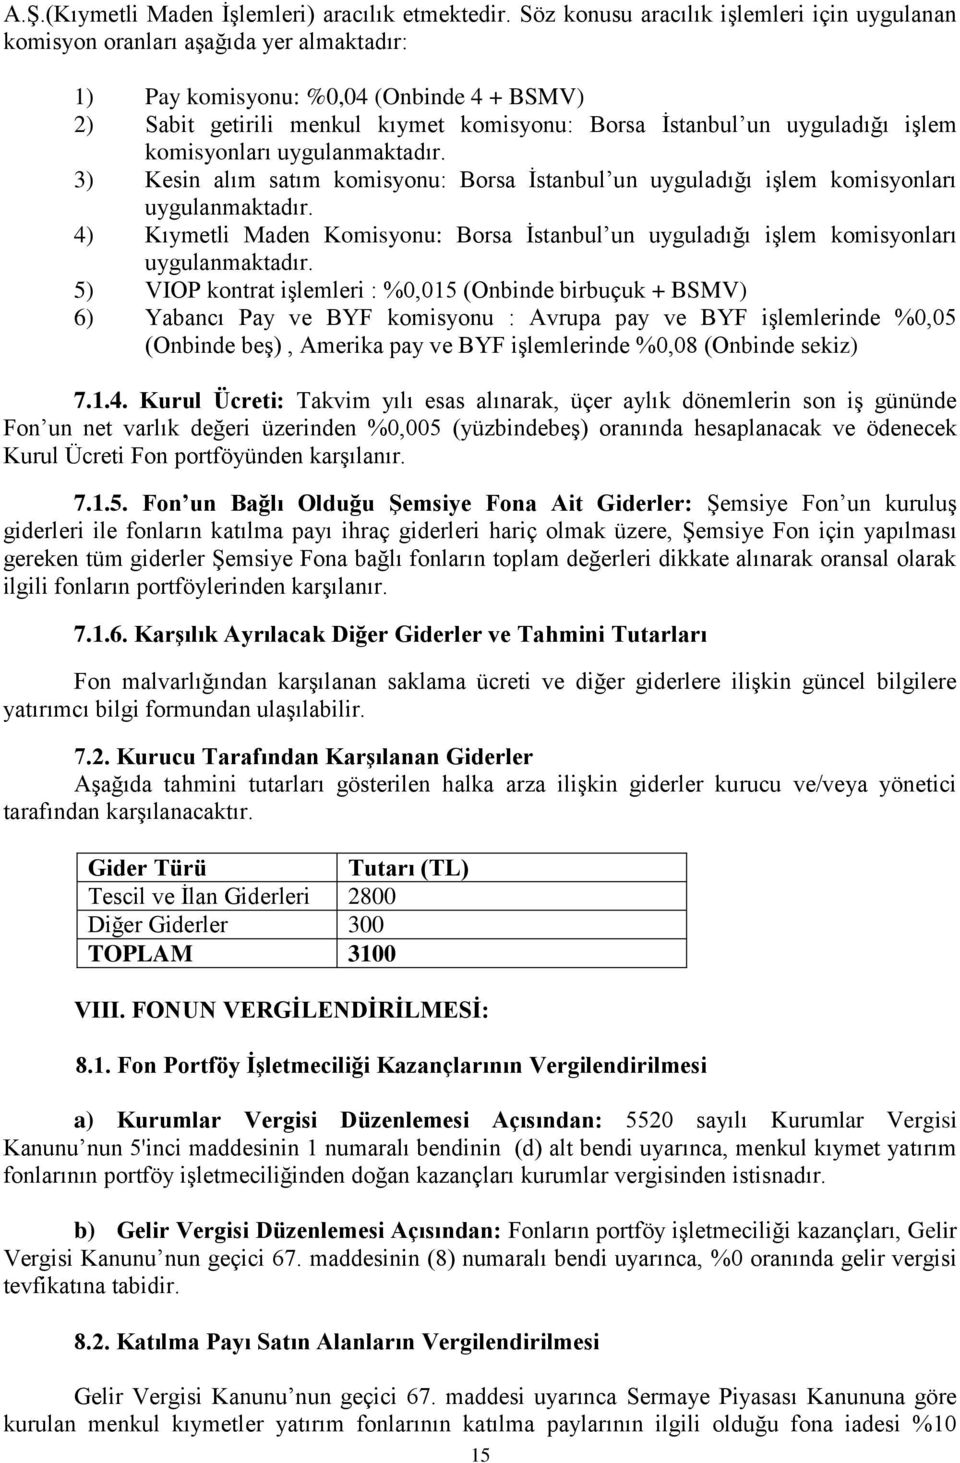 uyguladığı işlem komisyonları uygulanmaktadır. 3) Kesin alım satım komisyonu: Borsa İstanbul un uyguladığı işlem komisyonları uygulanmaktadır.